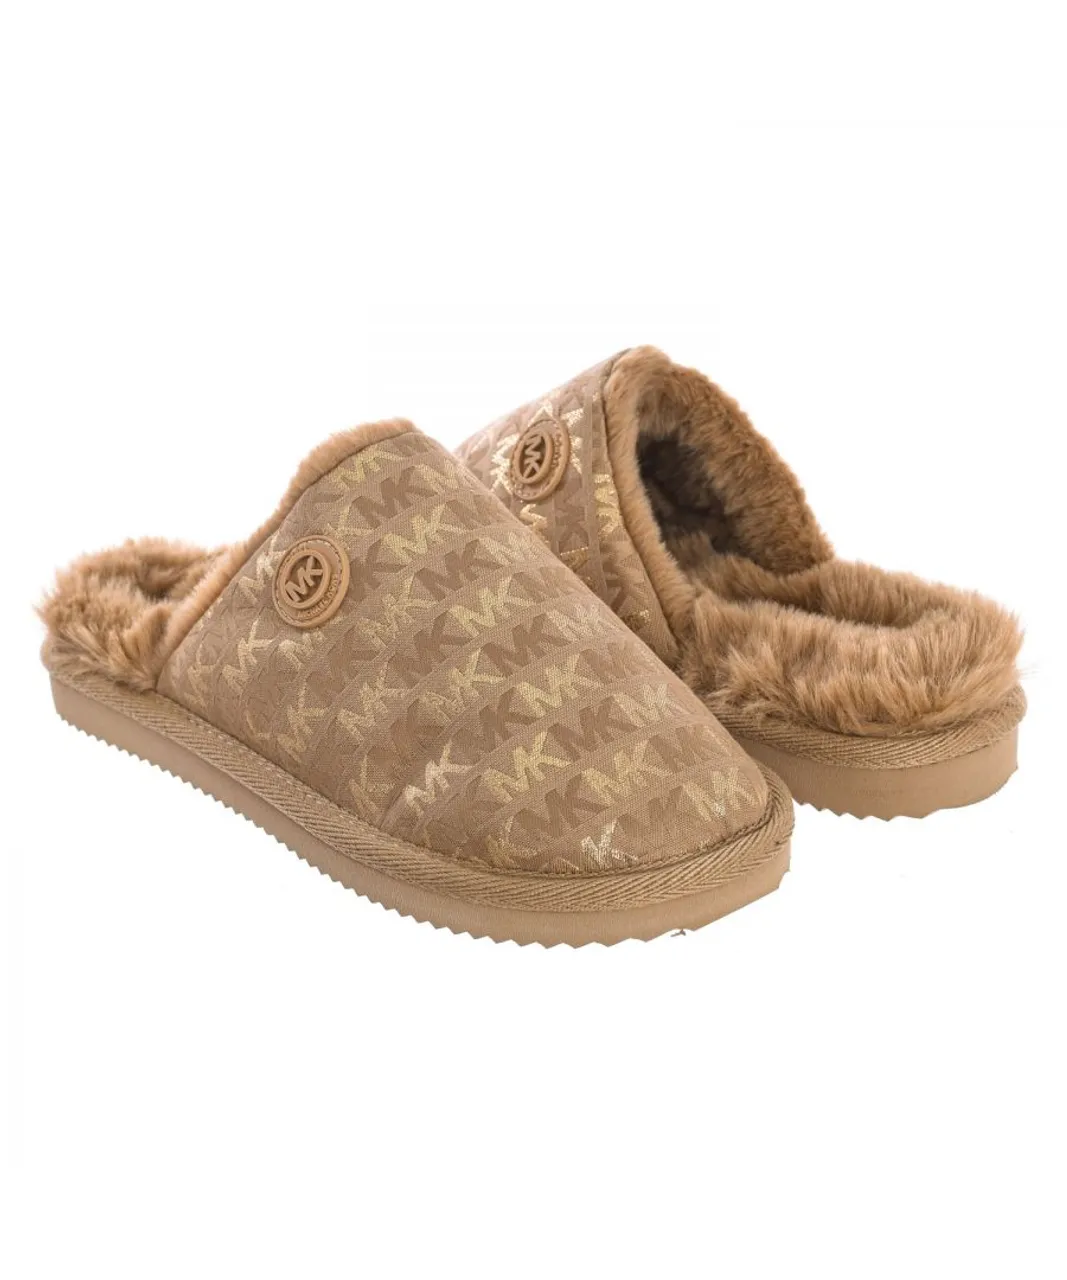 Michael Kors Womens House slippers 40R2JAFP1Y women - Brown